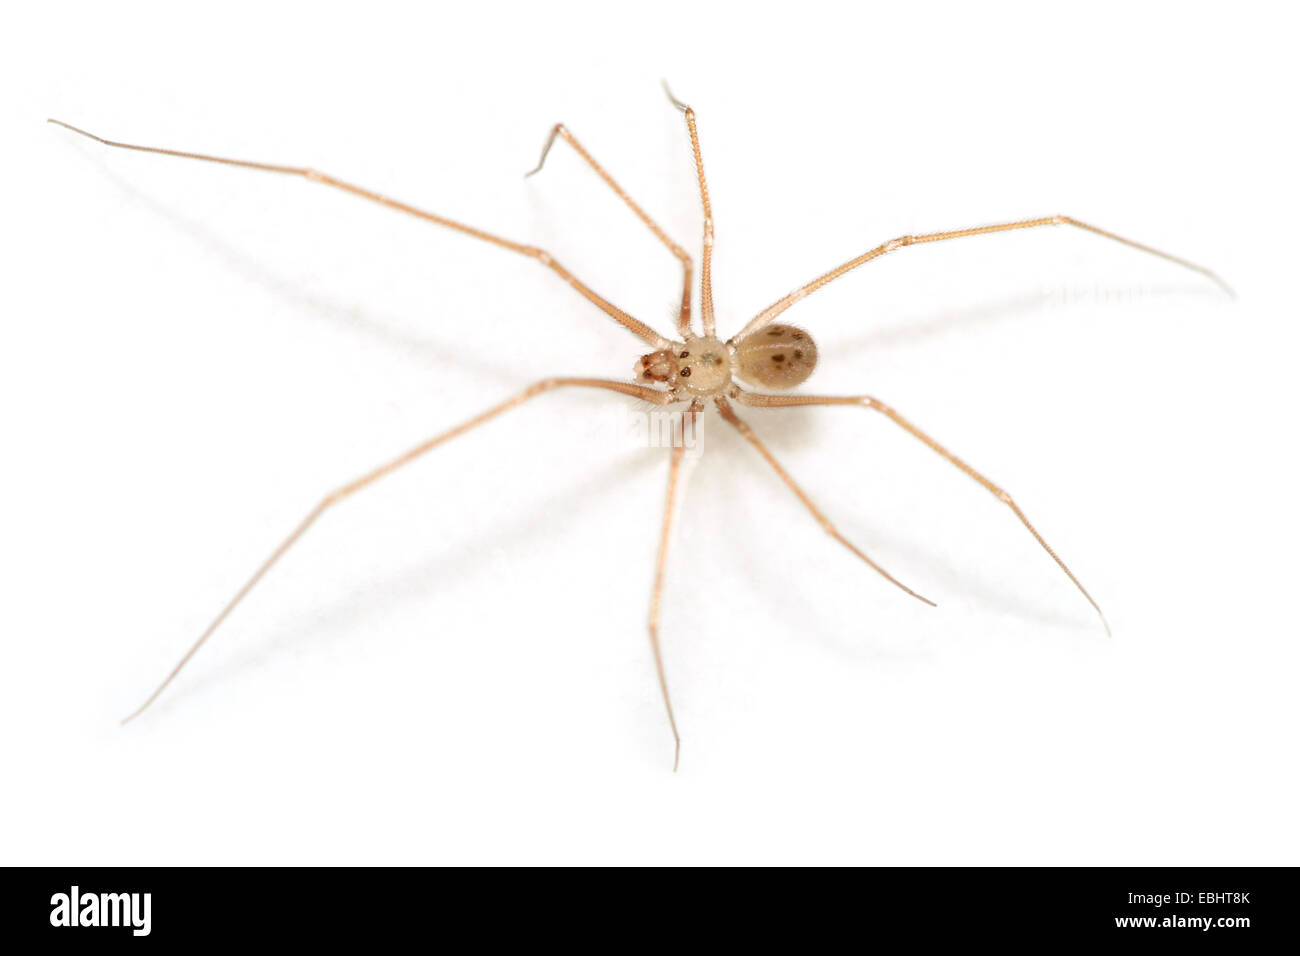 Araña senoculata Spermophora macho sobre fondo blanco. Familia Pholcidae, Bodega o temblor arañas. Esta araña sólo tiene seis ojos en dos grupos. Foto de stock